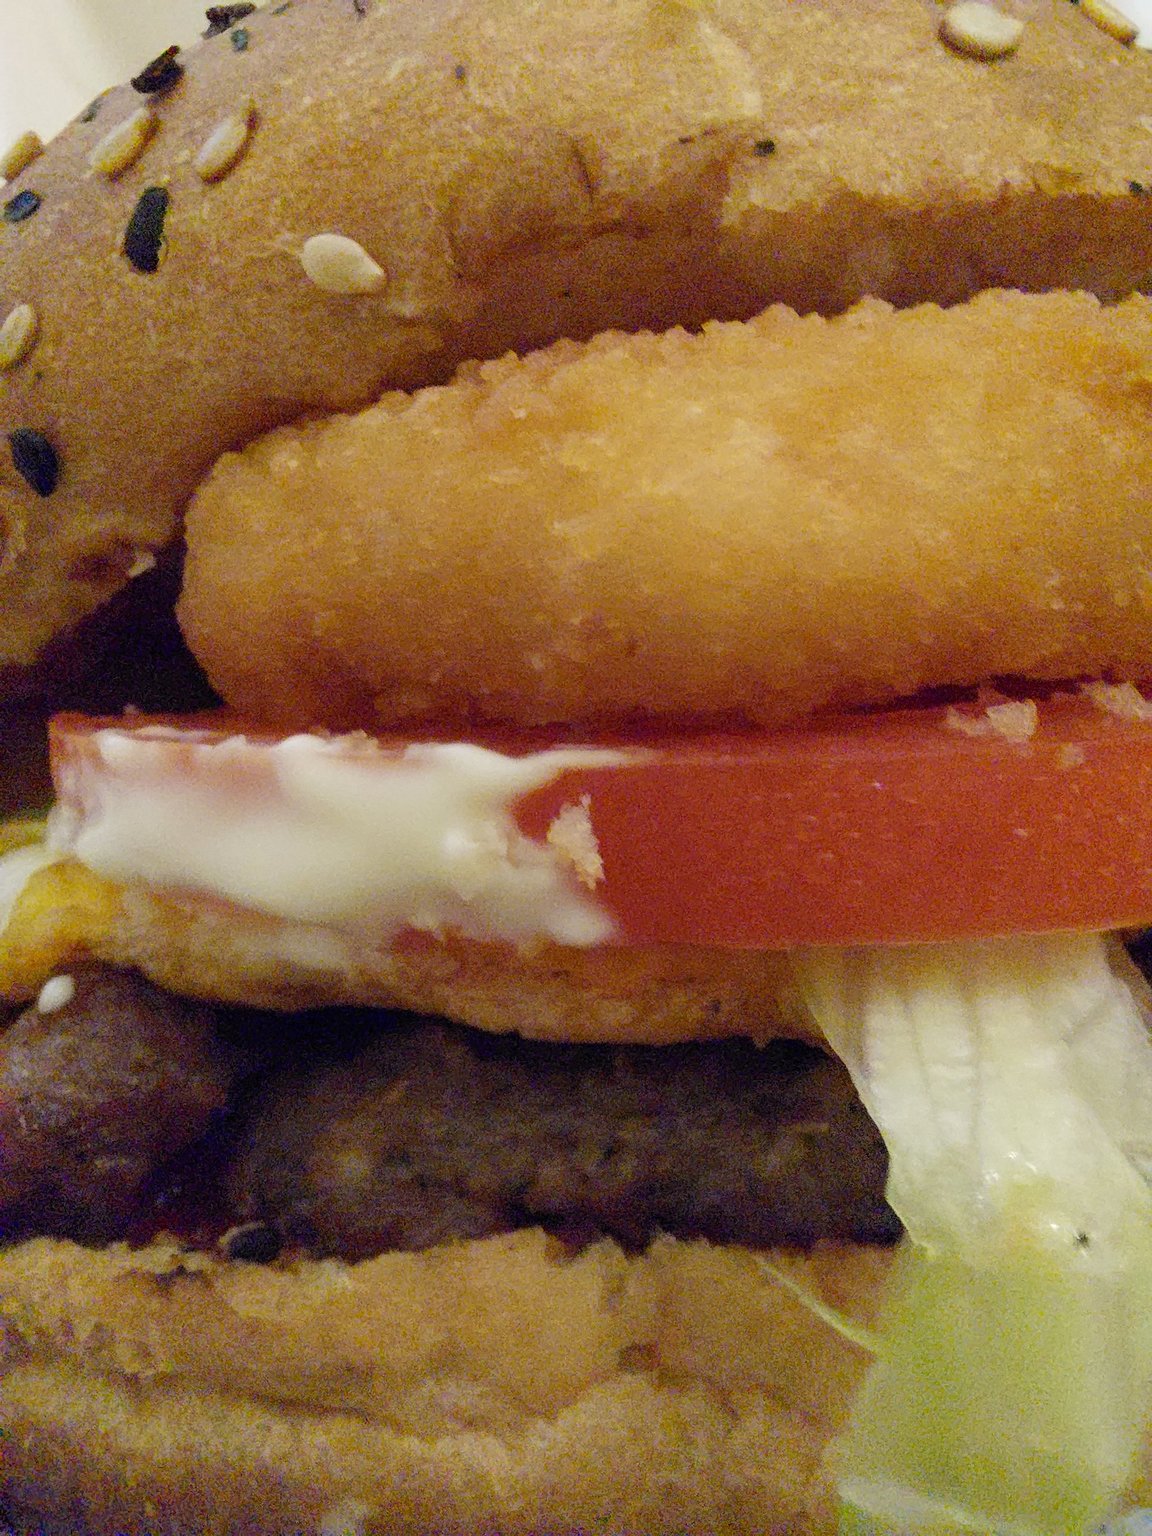 Burger & Greek House